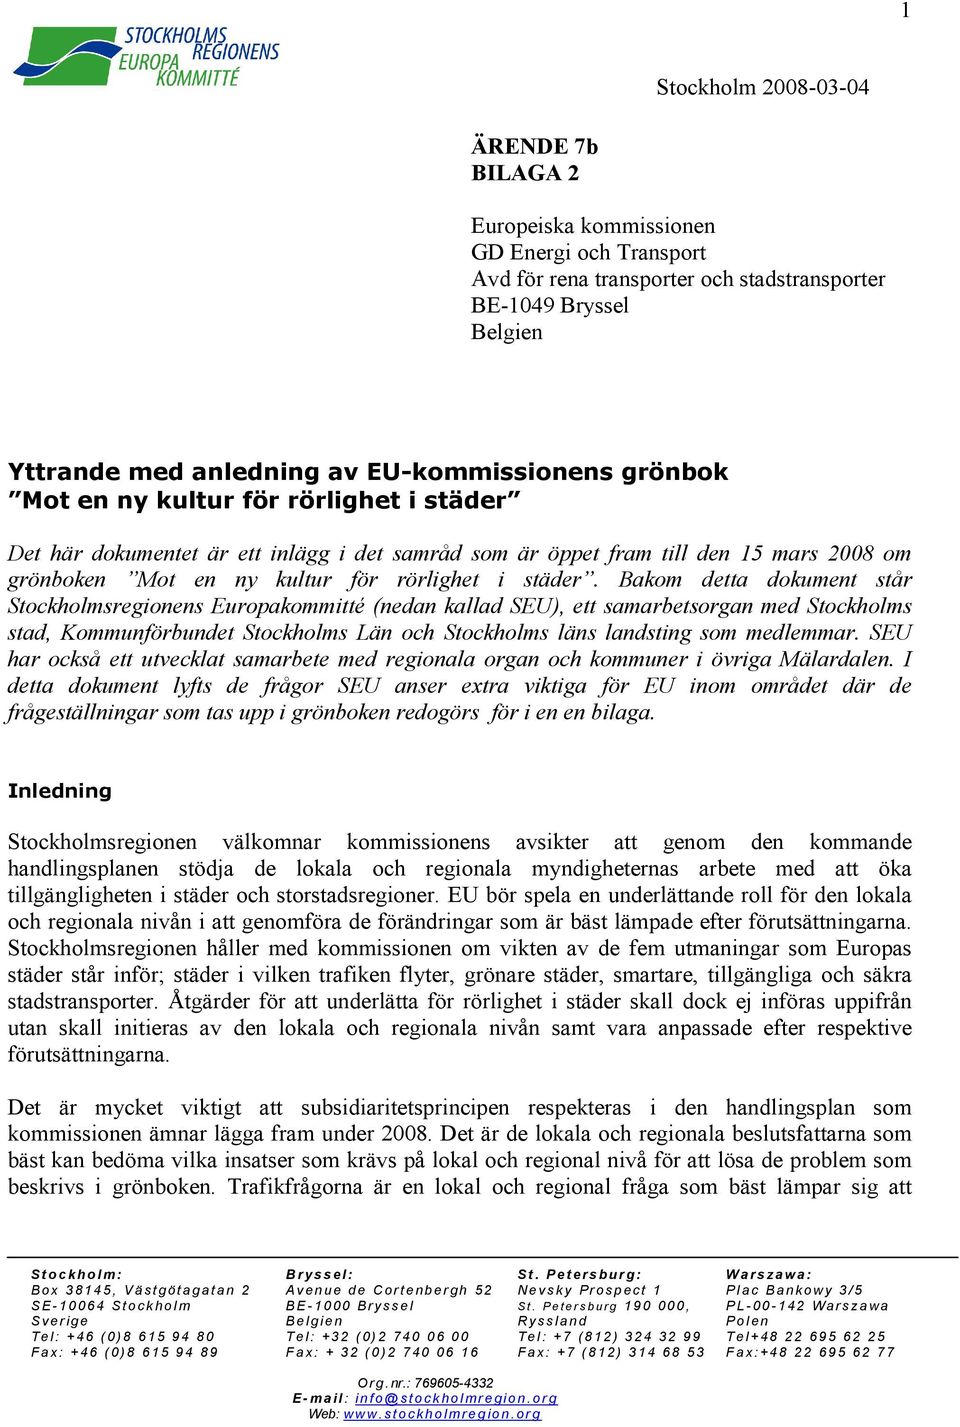 Bakom detta dokument står Stockholmsregionens Europakommitté (nedan kallad SEU), ett samarbetsorgan med Stockholms stad, Kommunförbundet Stockholms Län och Stockholms läns landsting som medlemmar.